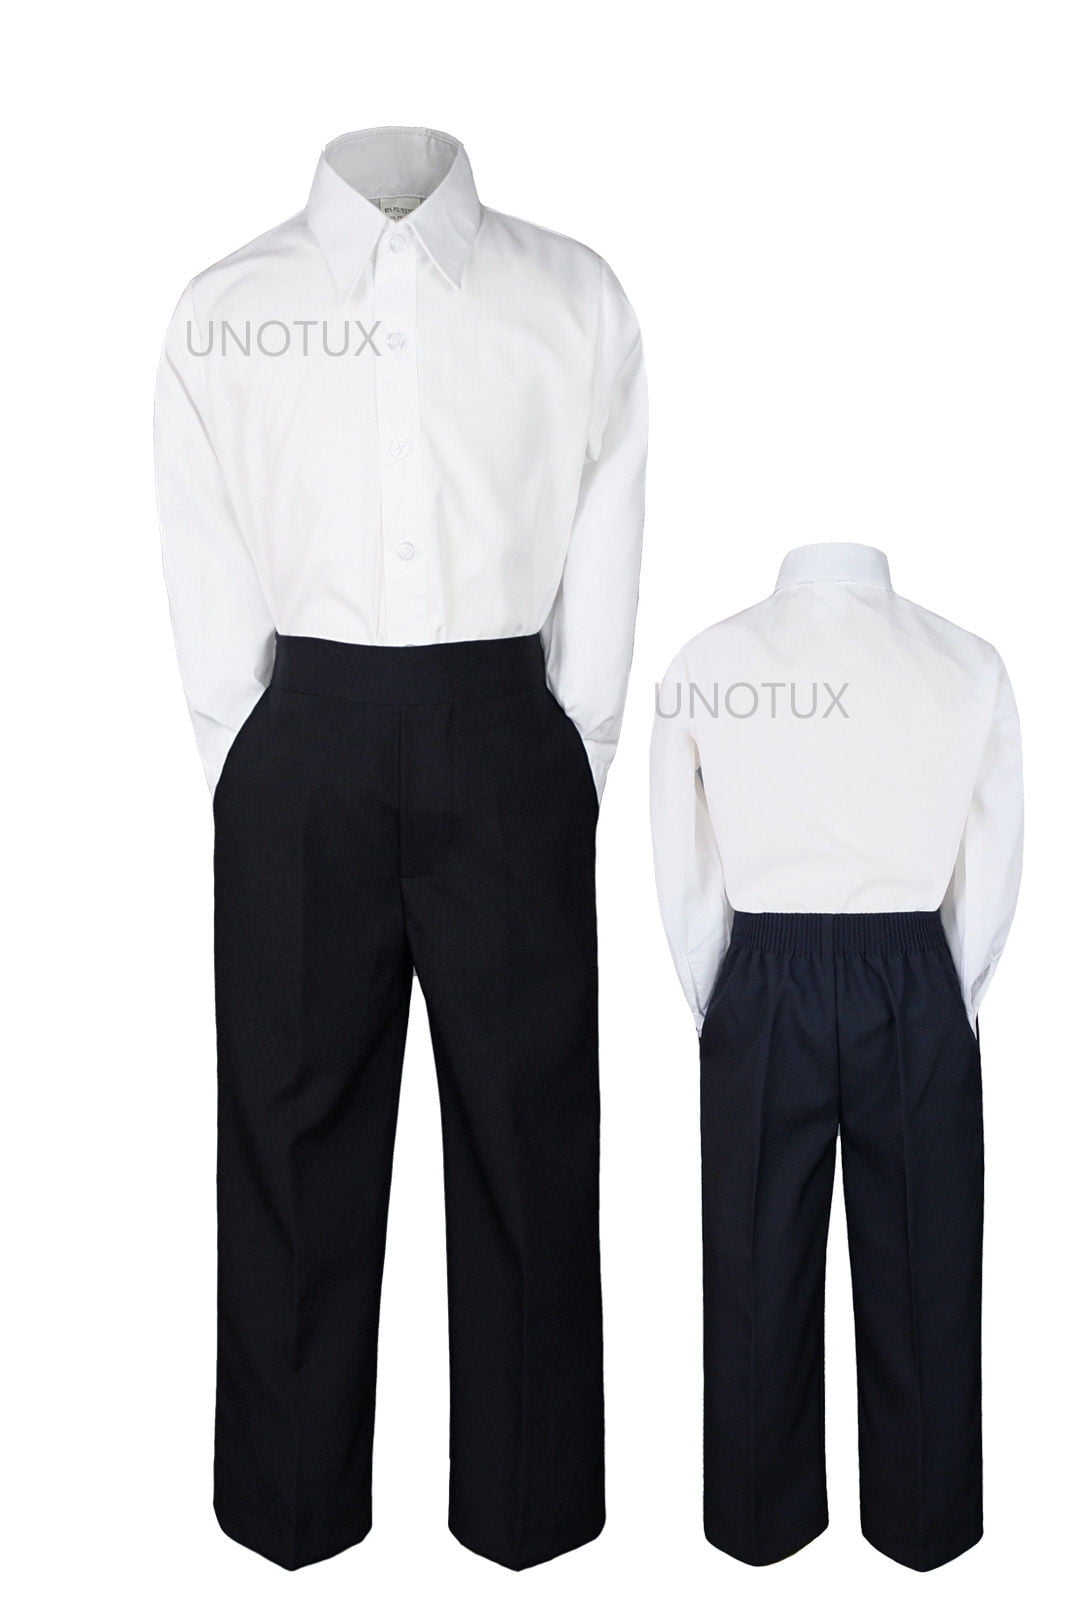 3pc Set Baby Boy Toddler Kid Teen Wedding White Black Pants Tie Formal Suit S-20 